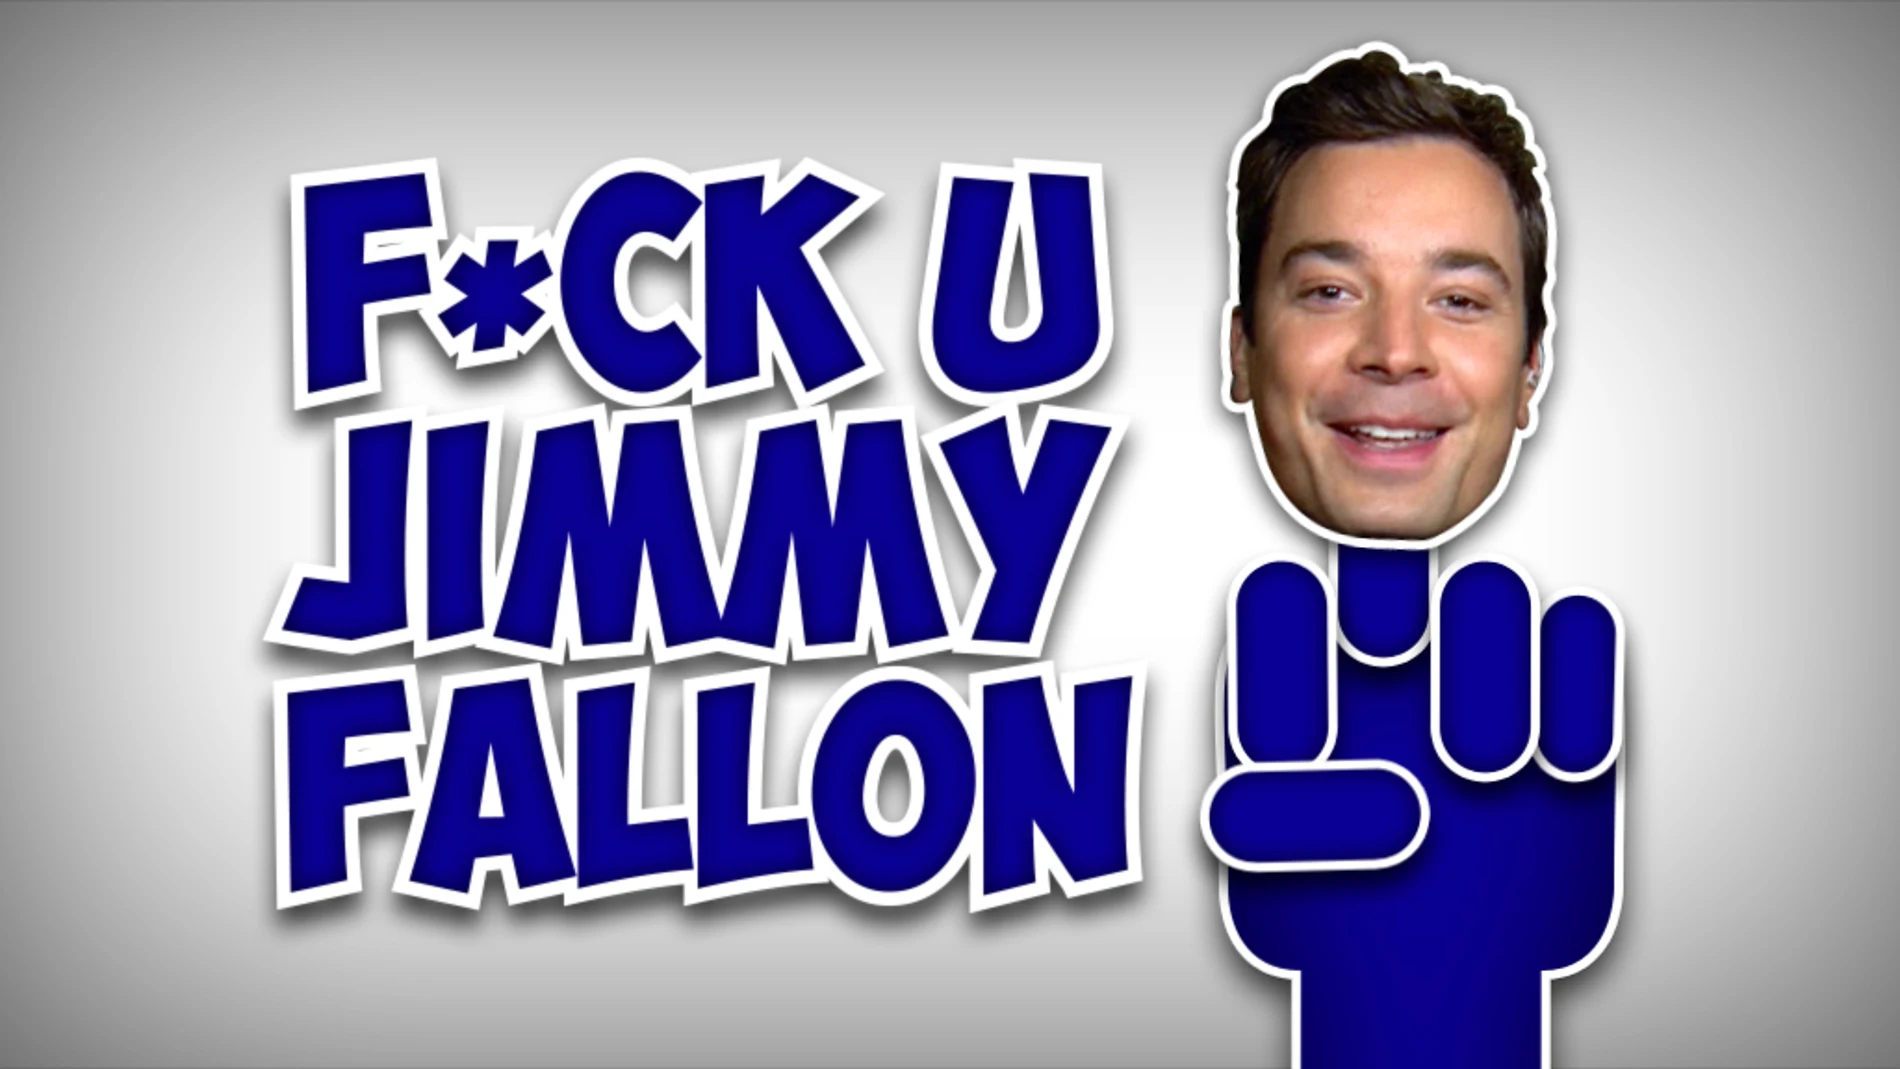 F*ck u Jimmy Fallon